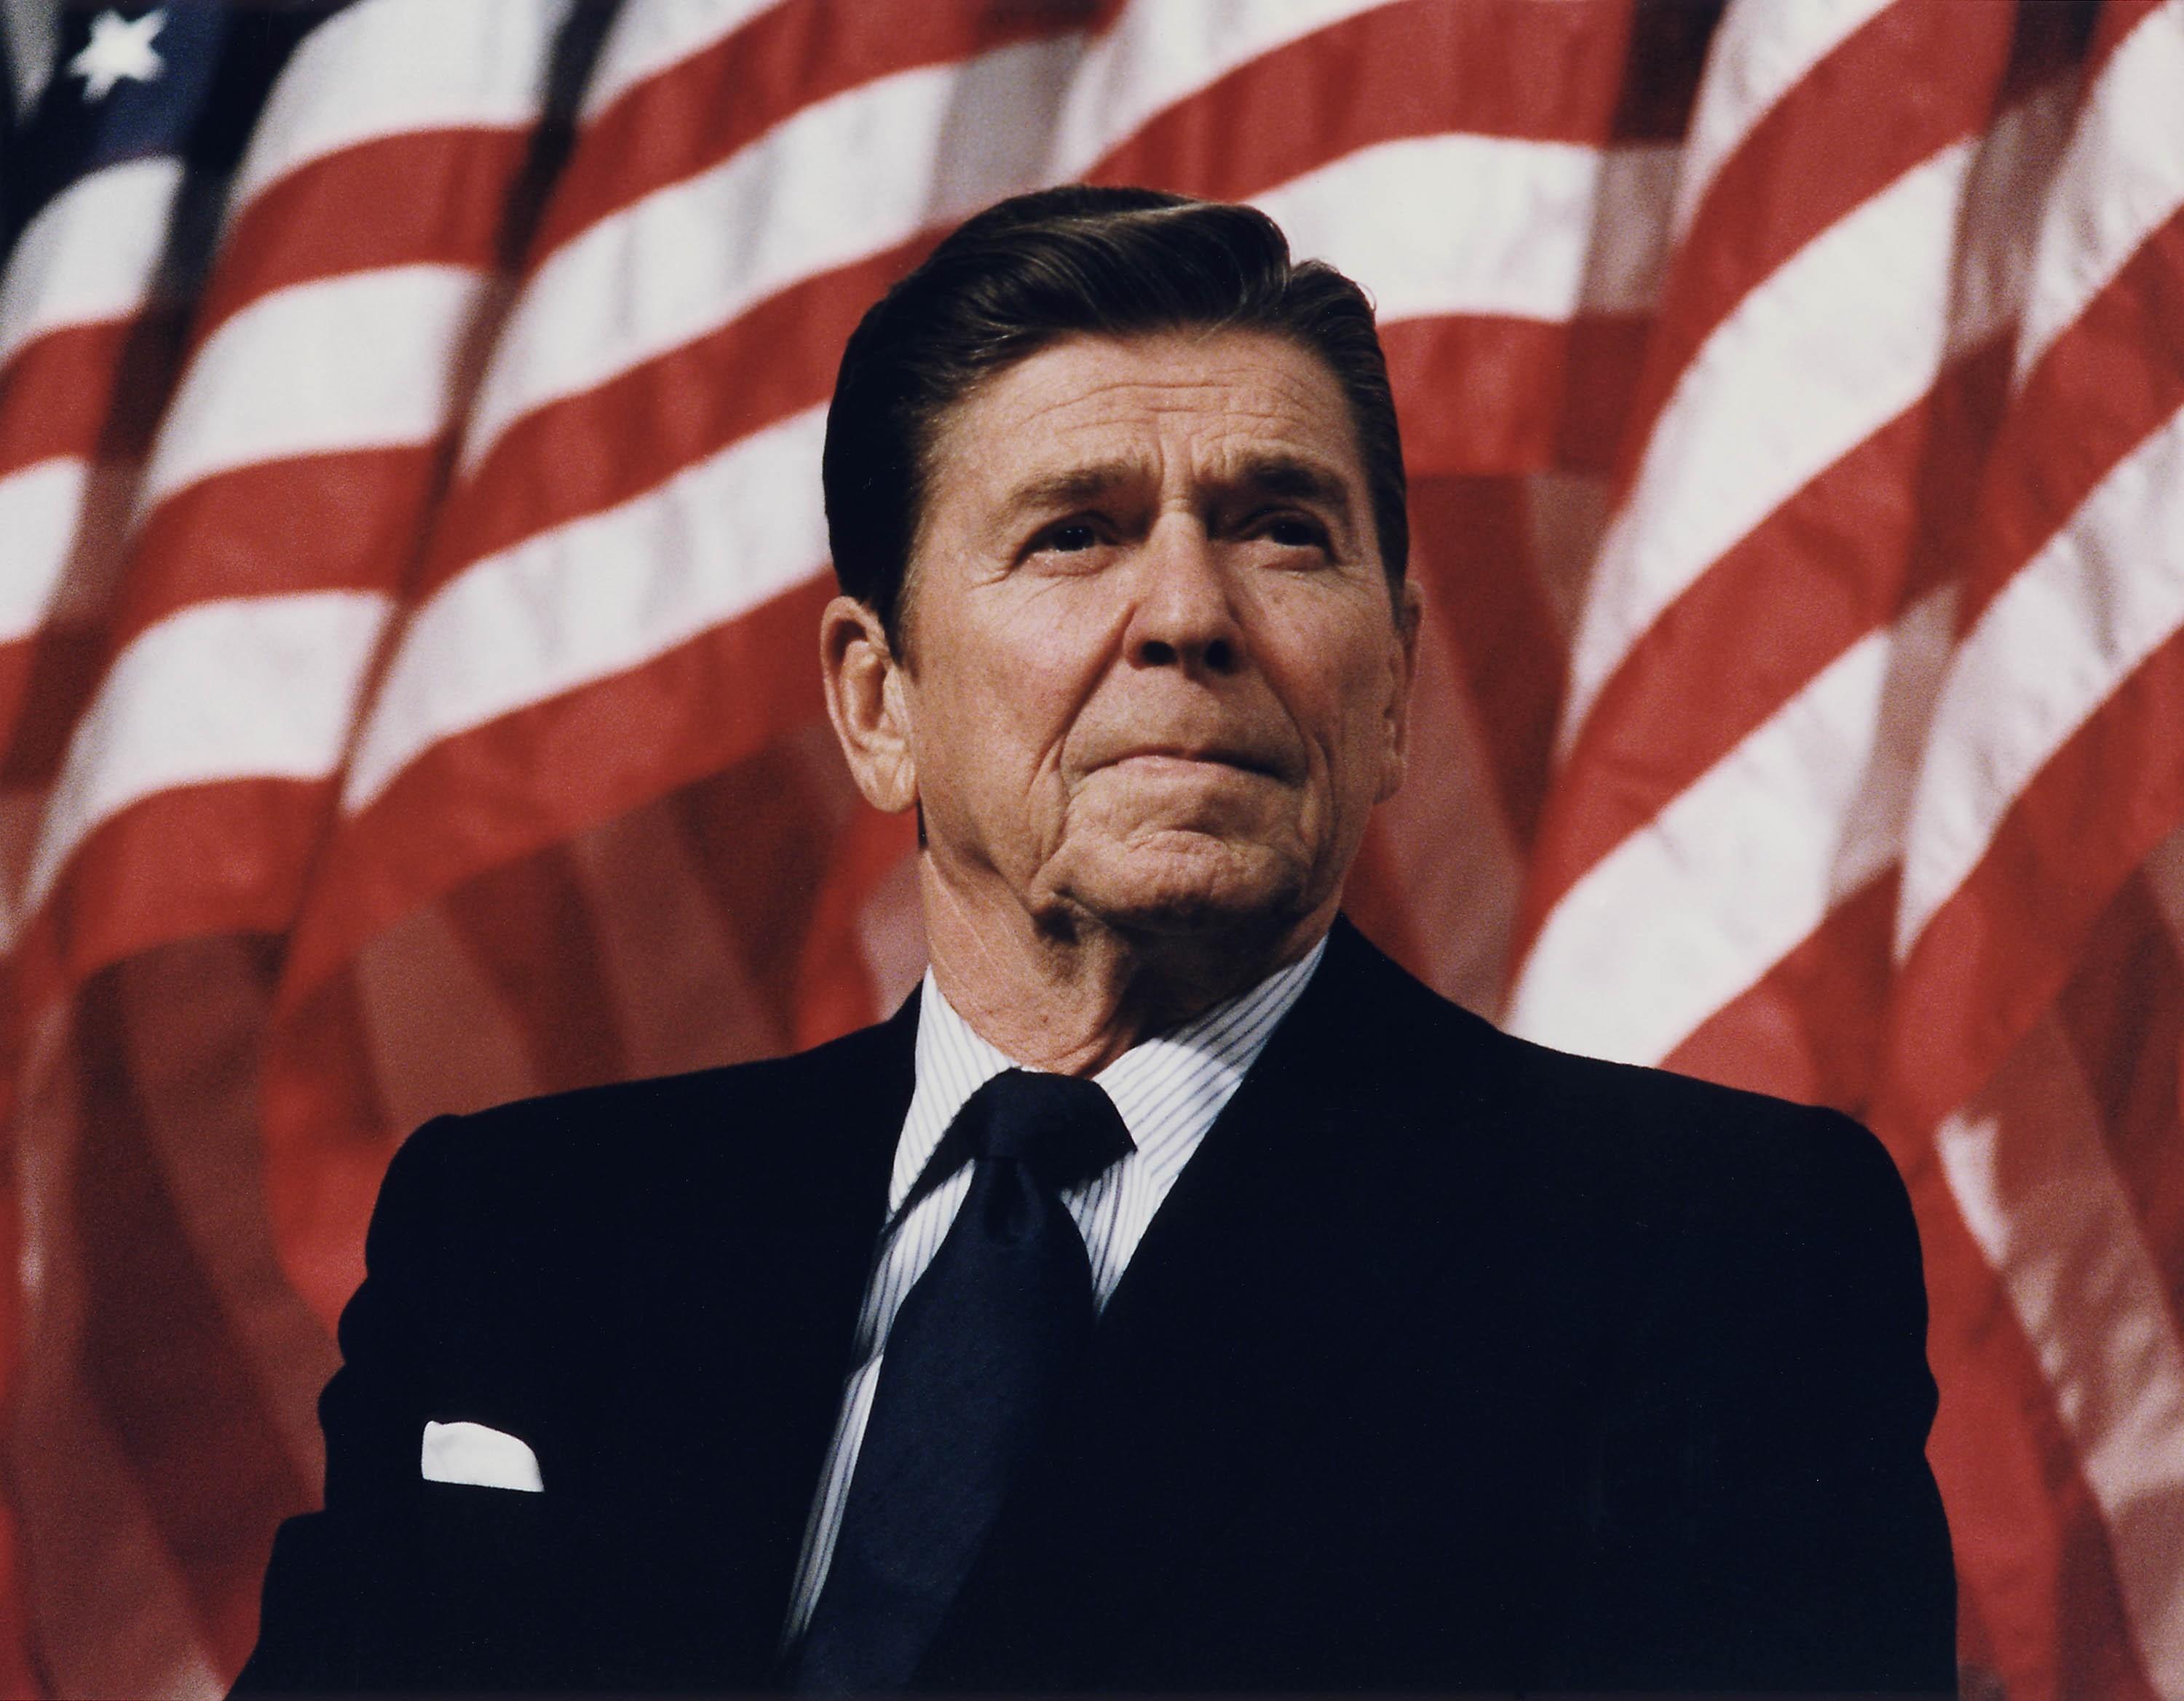 Ronald Reagan Wallpaper 7 X 2337